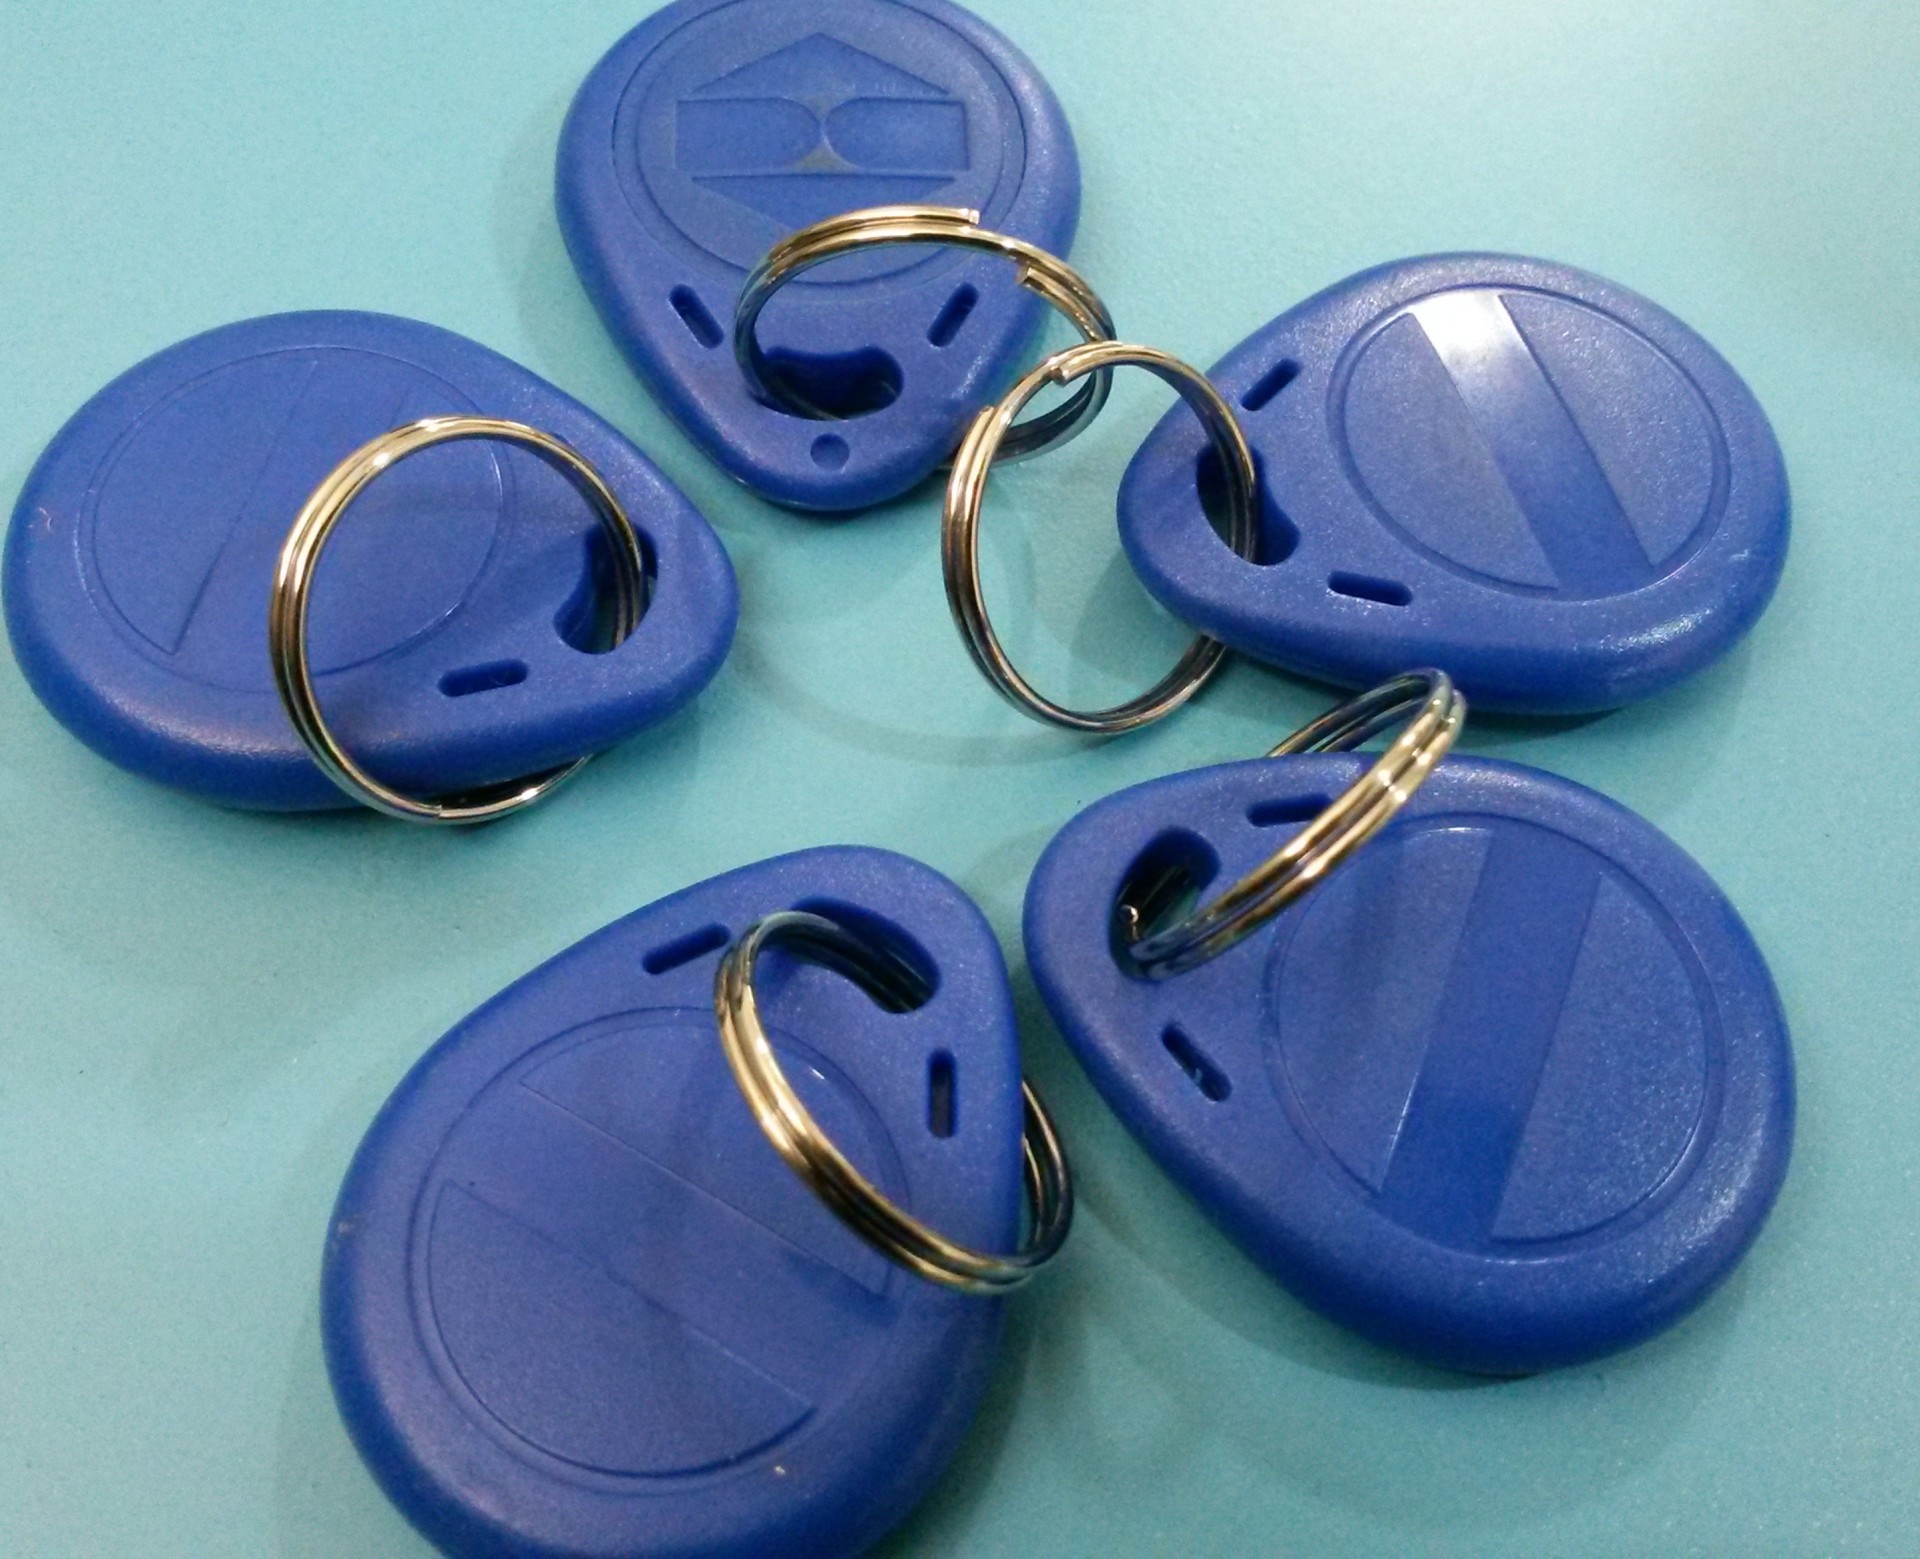 塑料柄钥匙穿环机械设备 钥匙自动扣环机参数  锁匙圈串环机加工